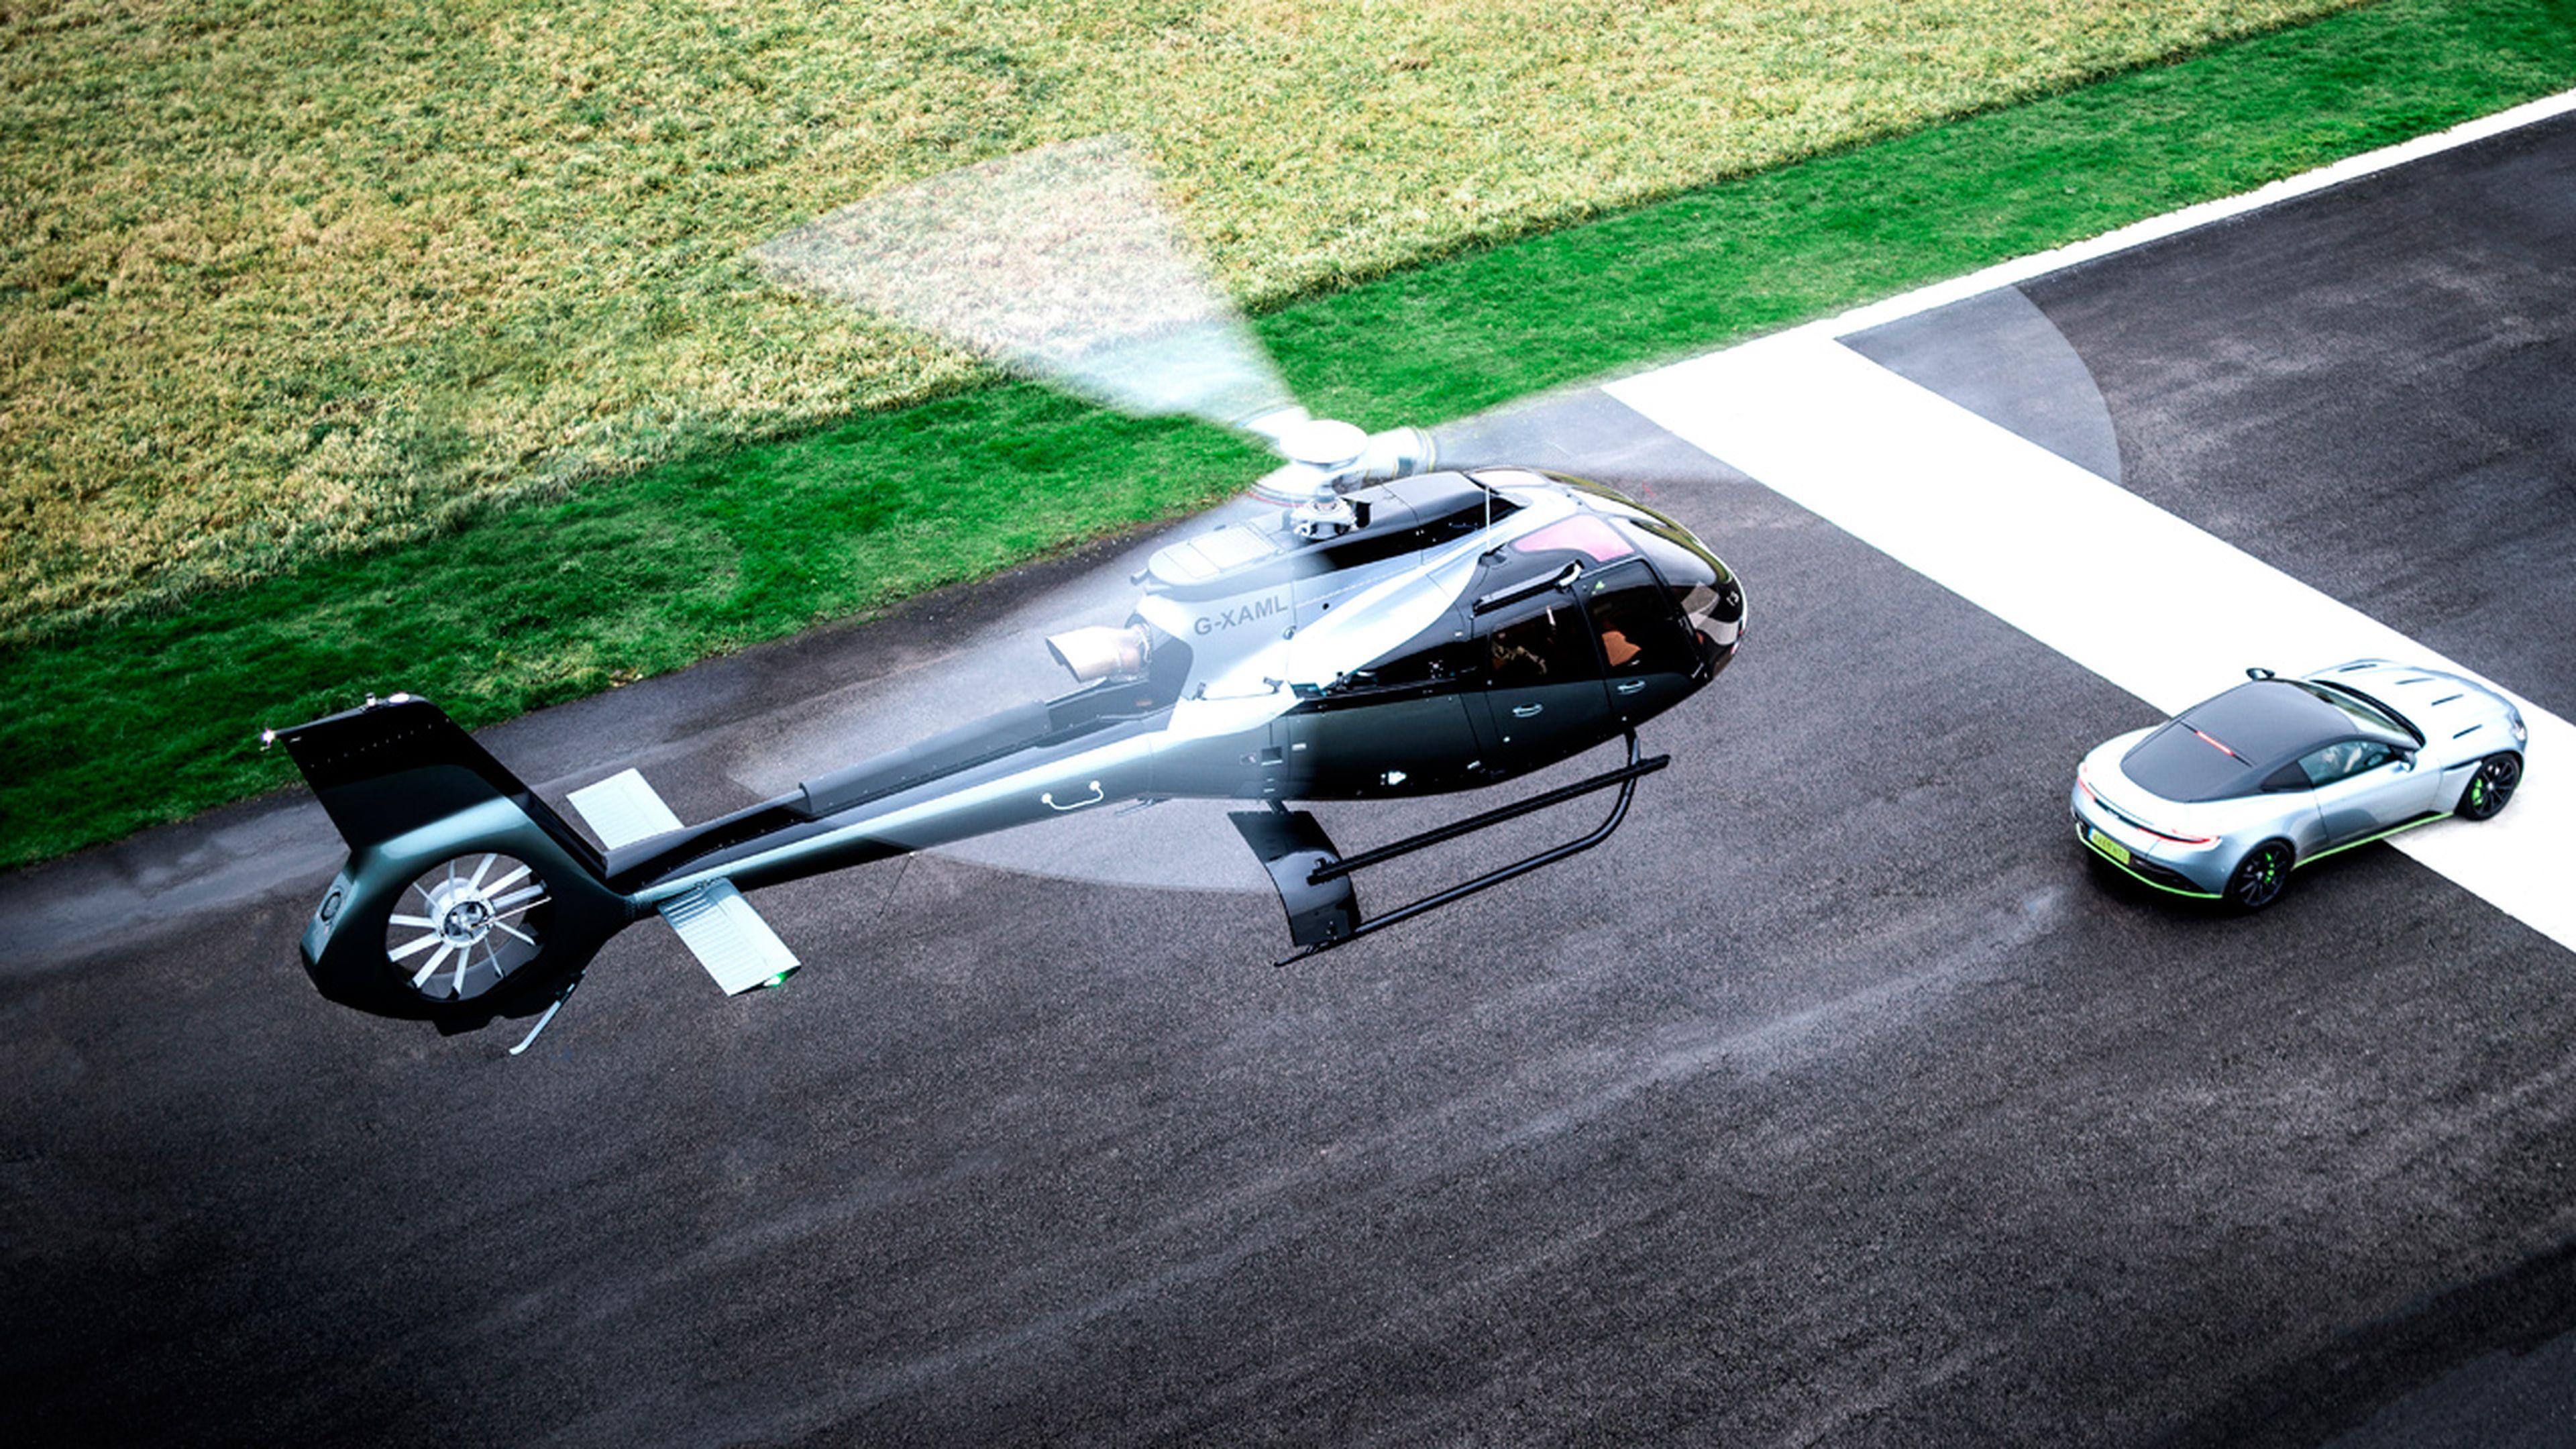 ACH130, helicóptero Aston Martin